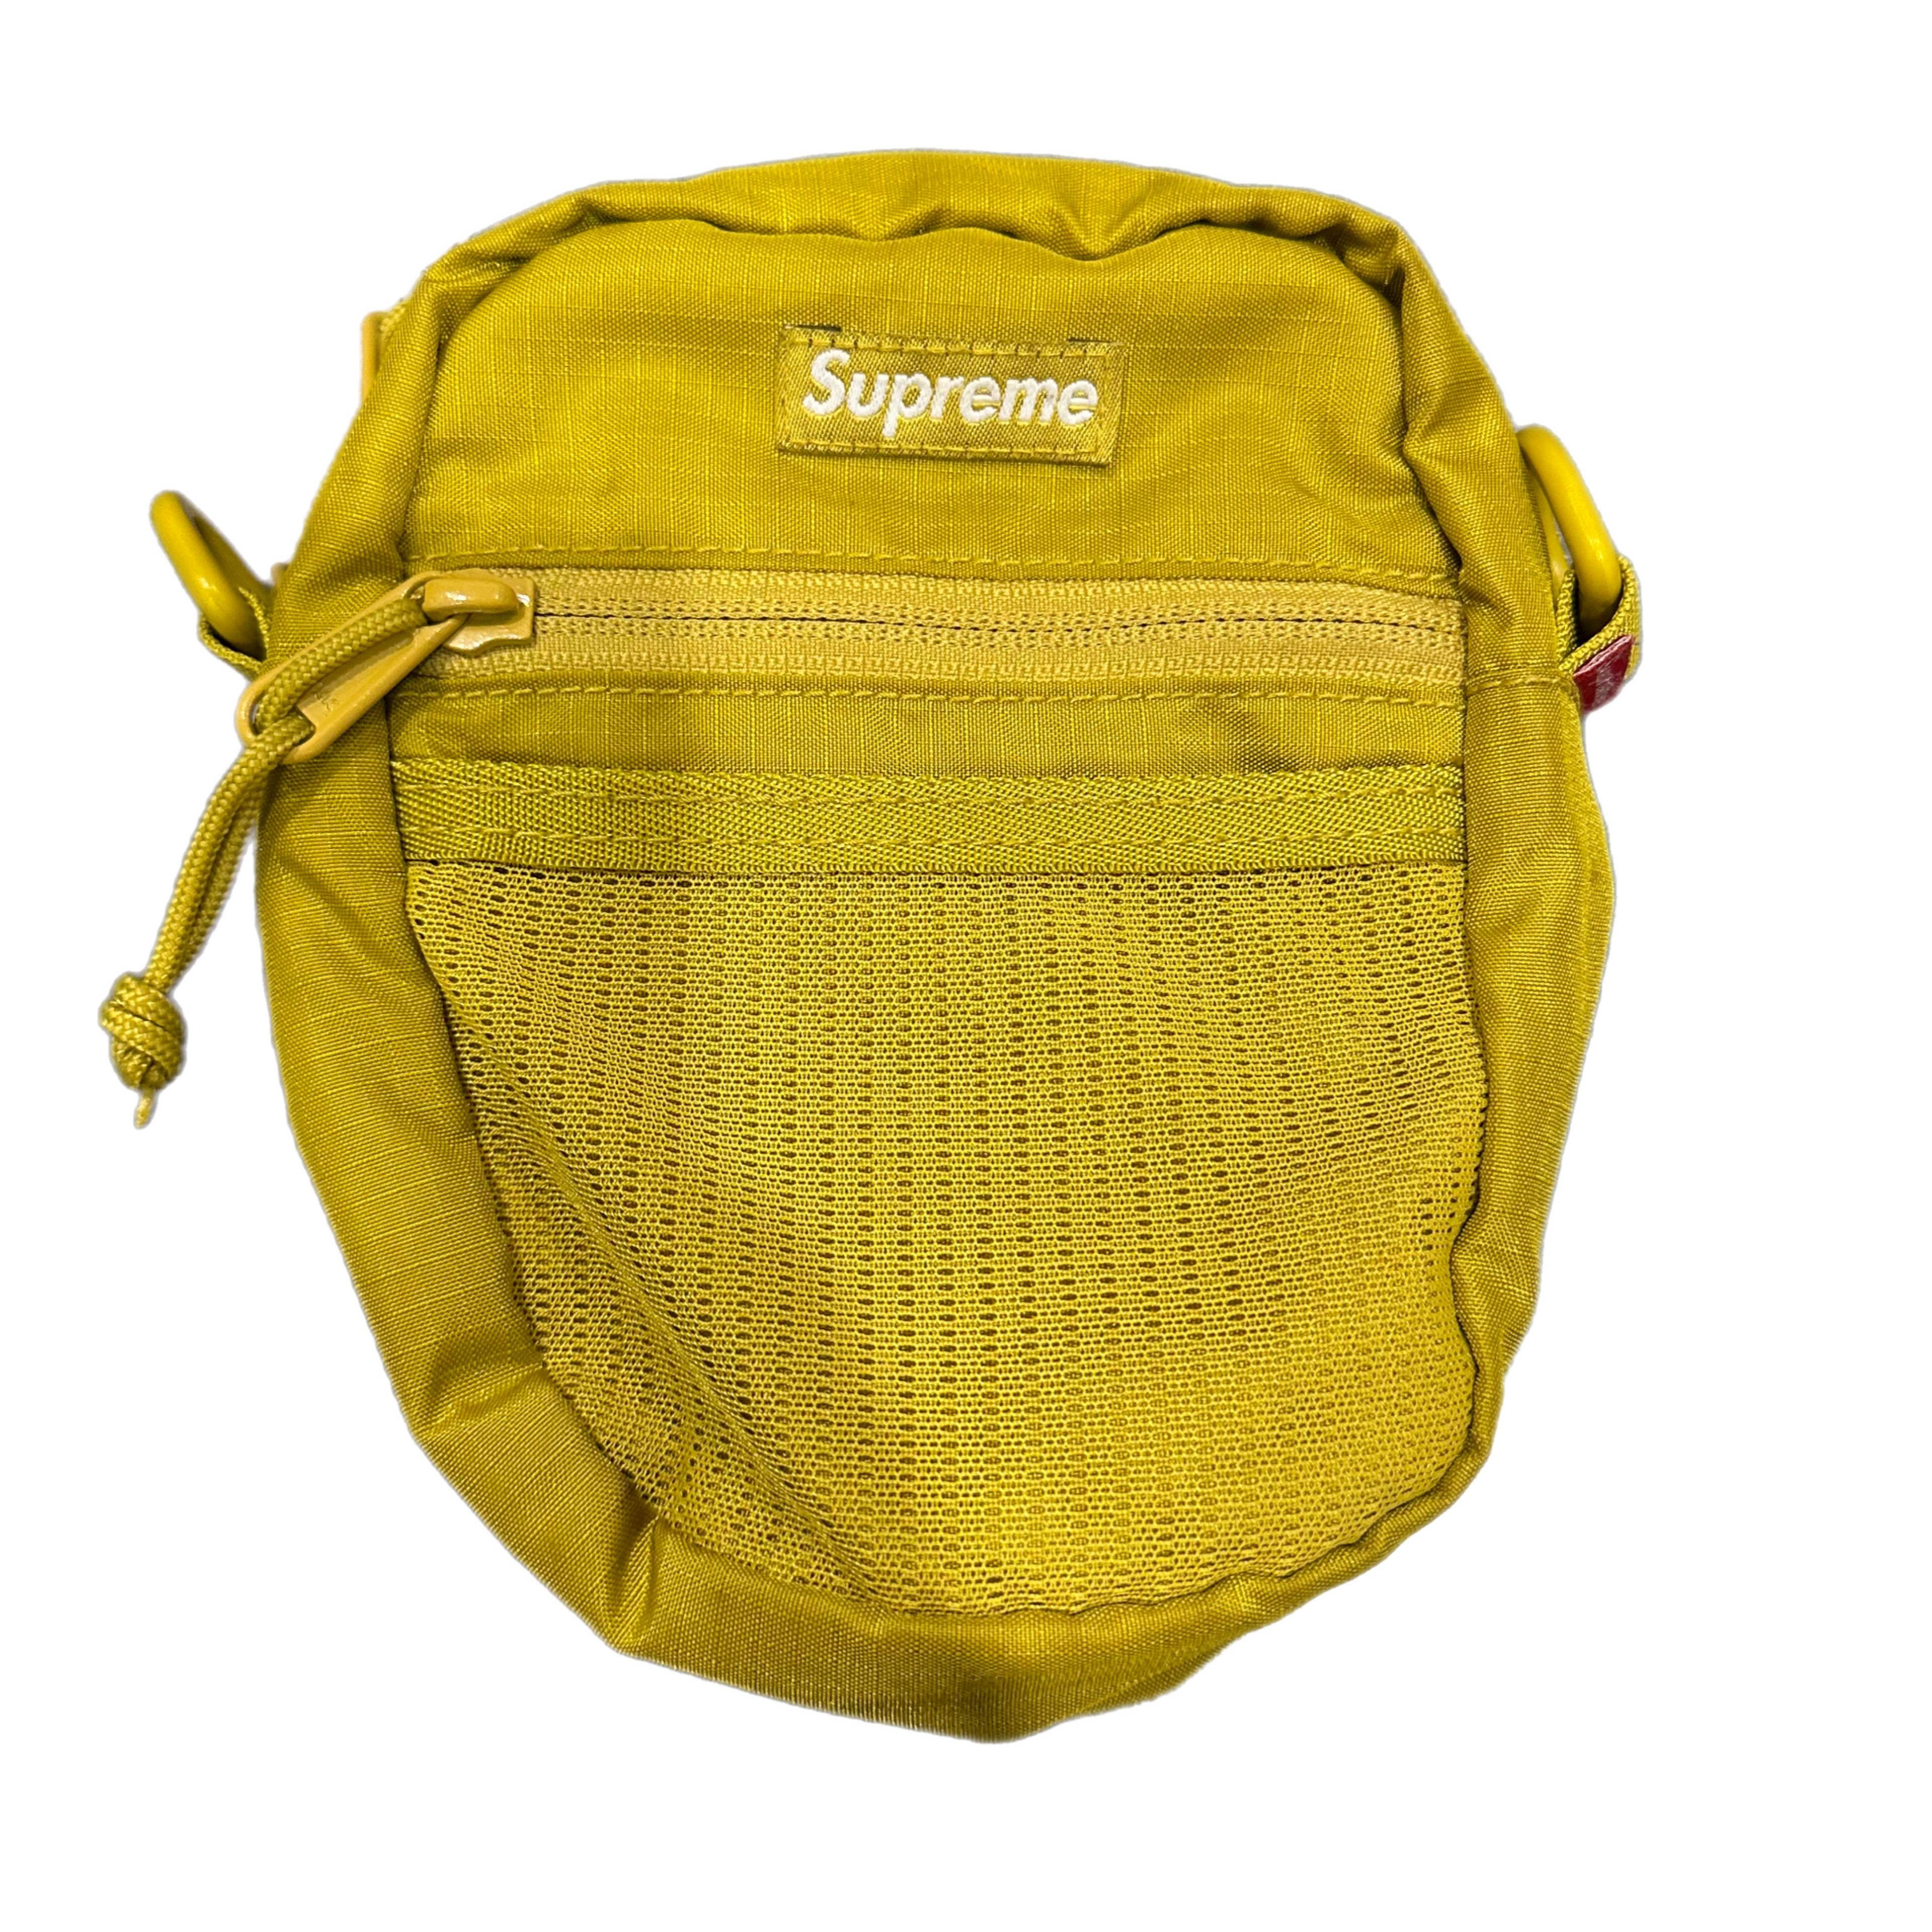 Supreme - "Shoulder Bag"